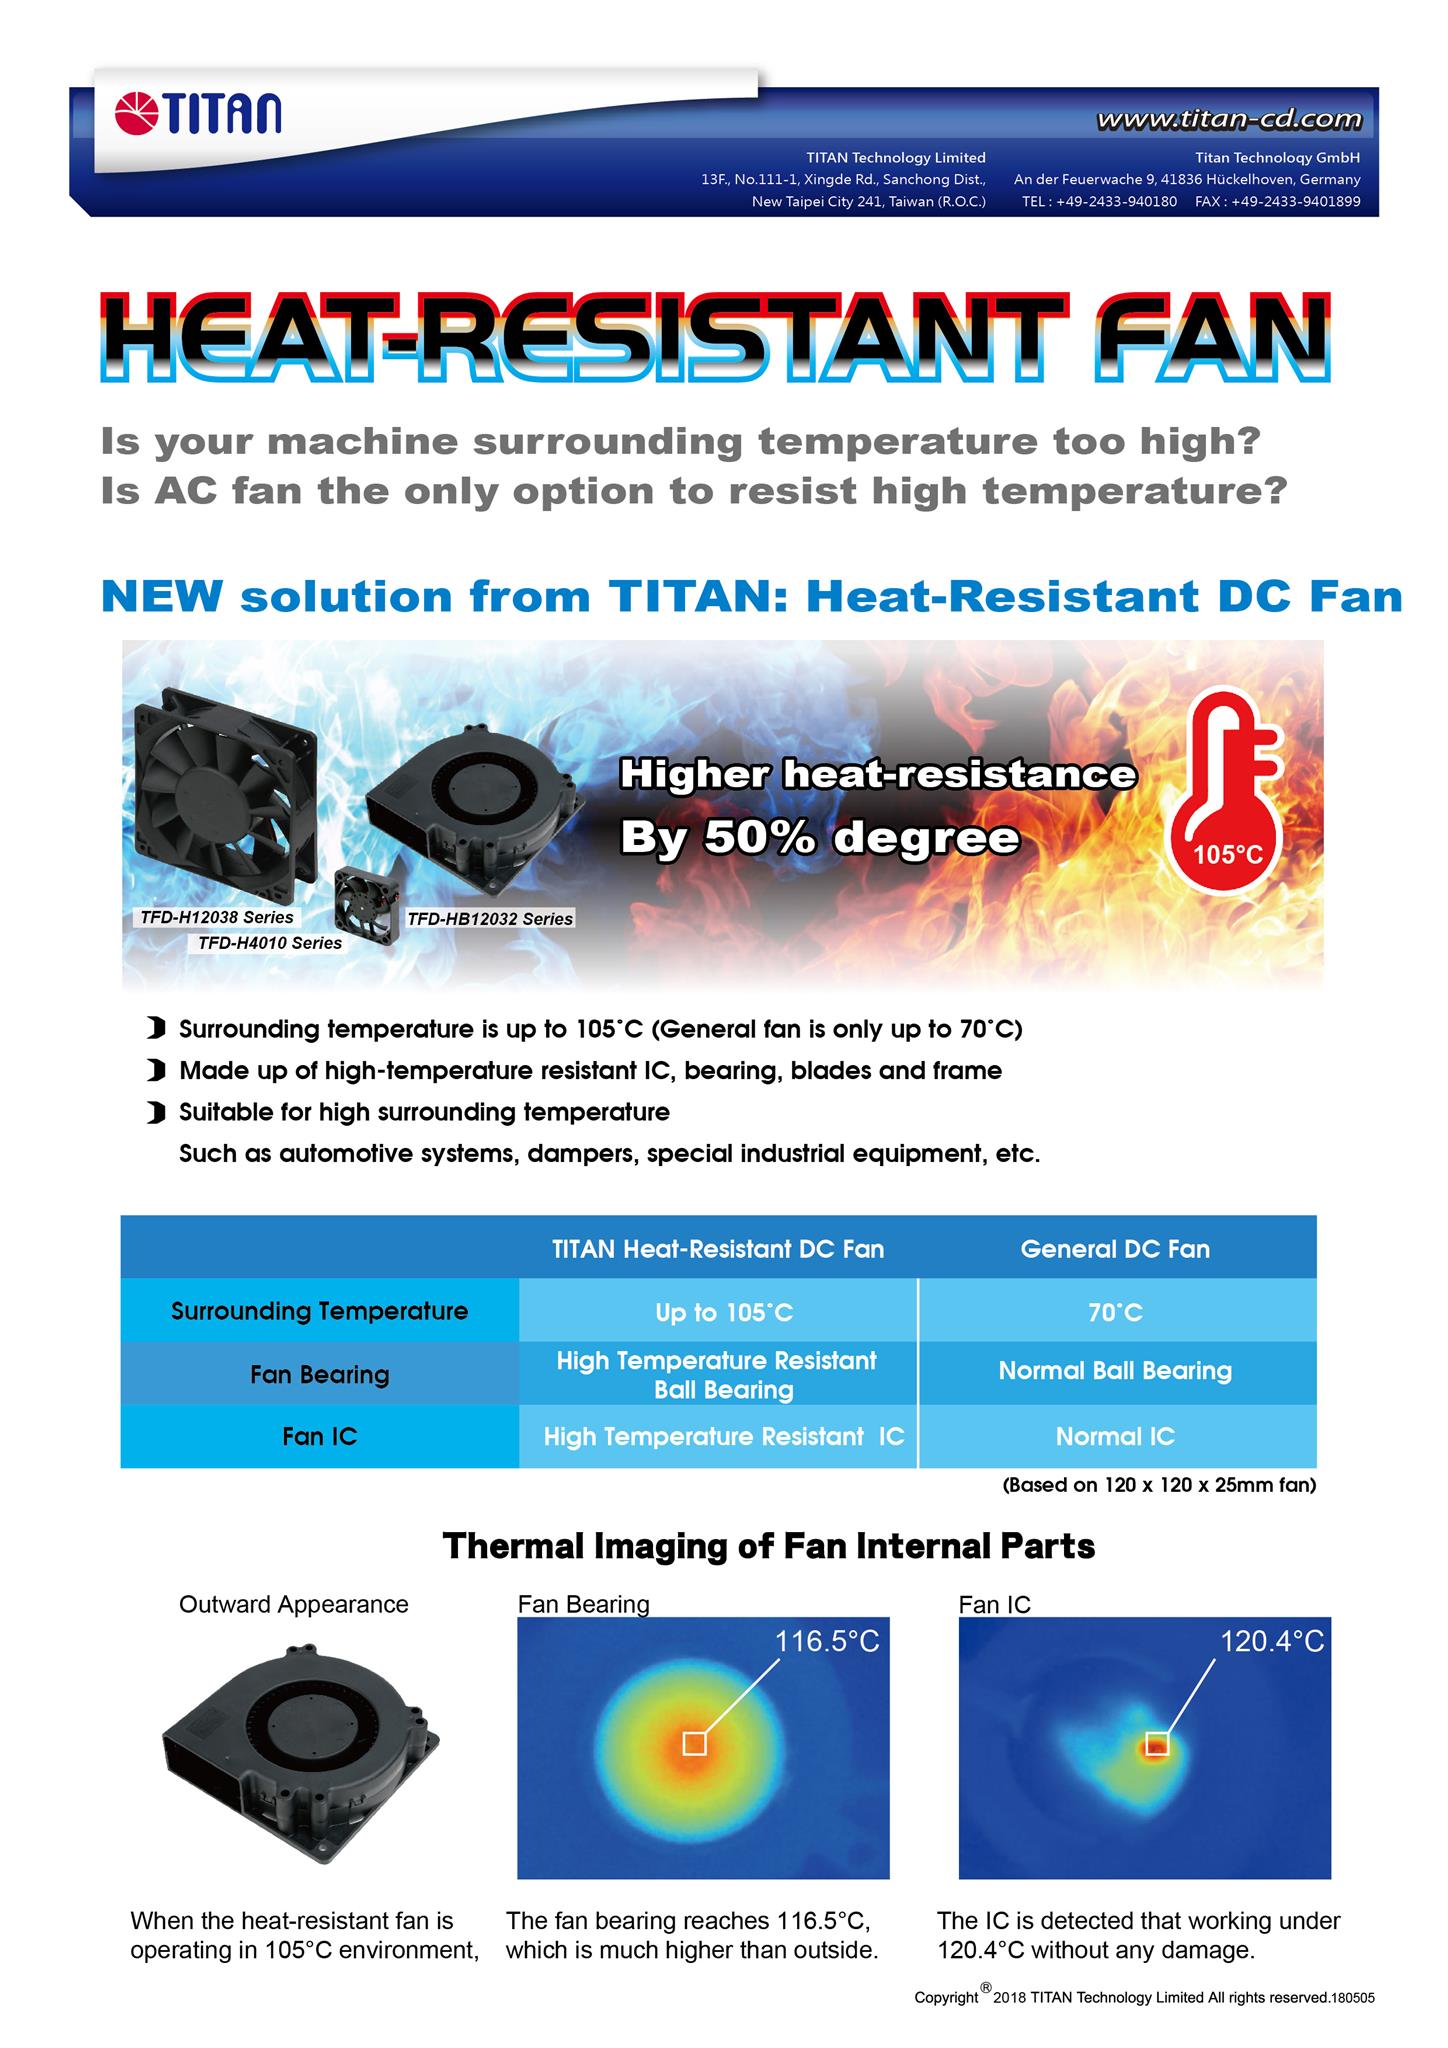 TITAN flacher CPU-Kühler ist nur 23-30mm hoch. Geeignet für flache Gehäuse oder andere HTPC-Gehäuse /&gt;&lt;/p&gt;&lt;/body&gt;